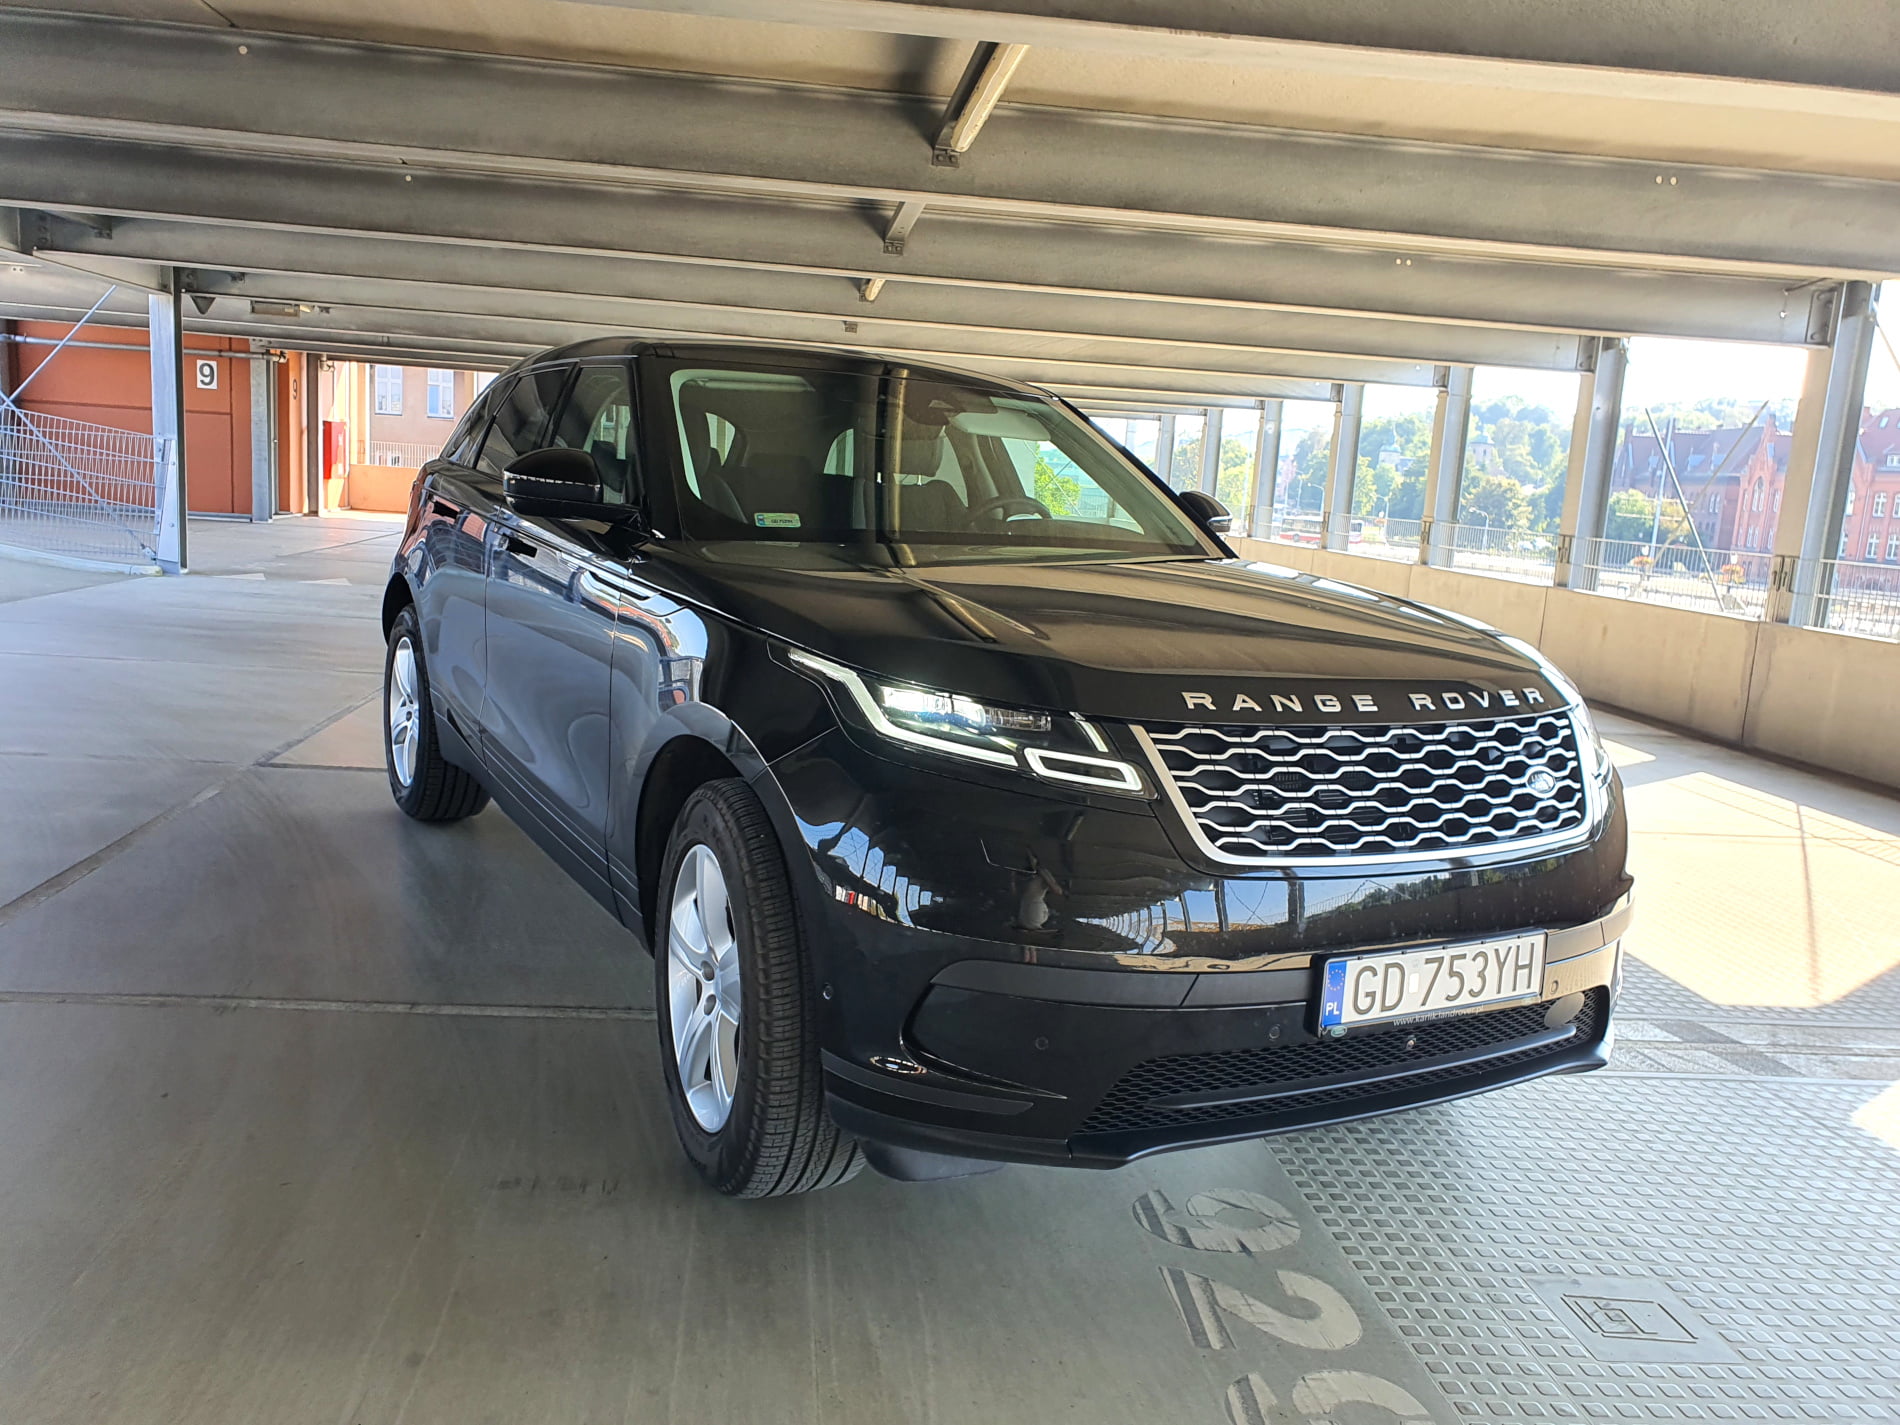 Range Rover Velar wypożyczalnia samochodów Mestenza Gdańsk